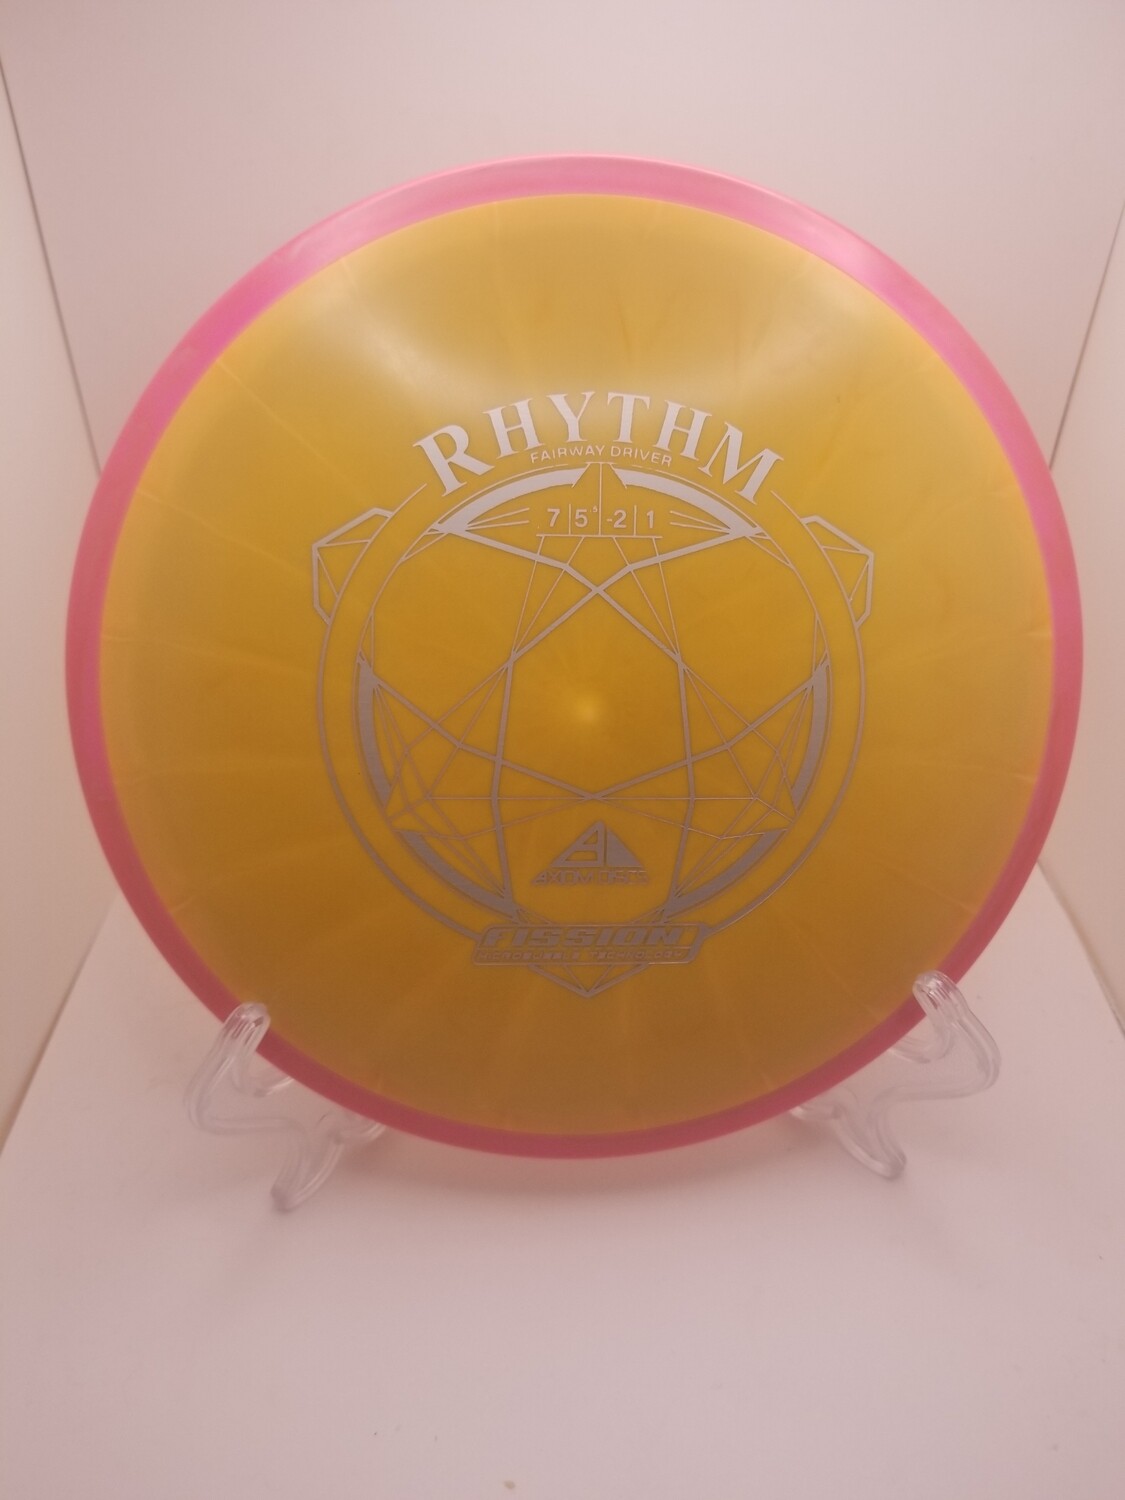 Axiom Discs Fission Rhythm Orange with Pink Rim 160g